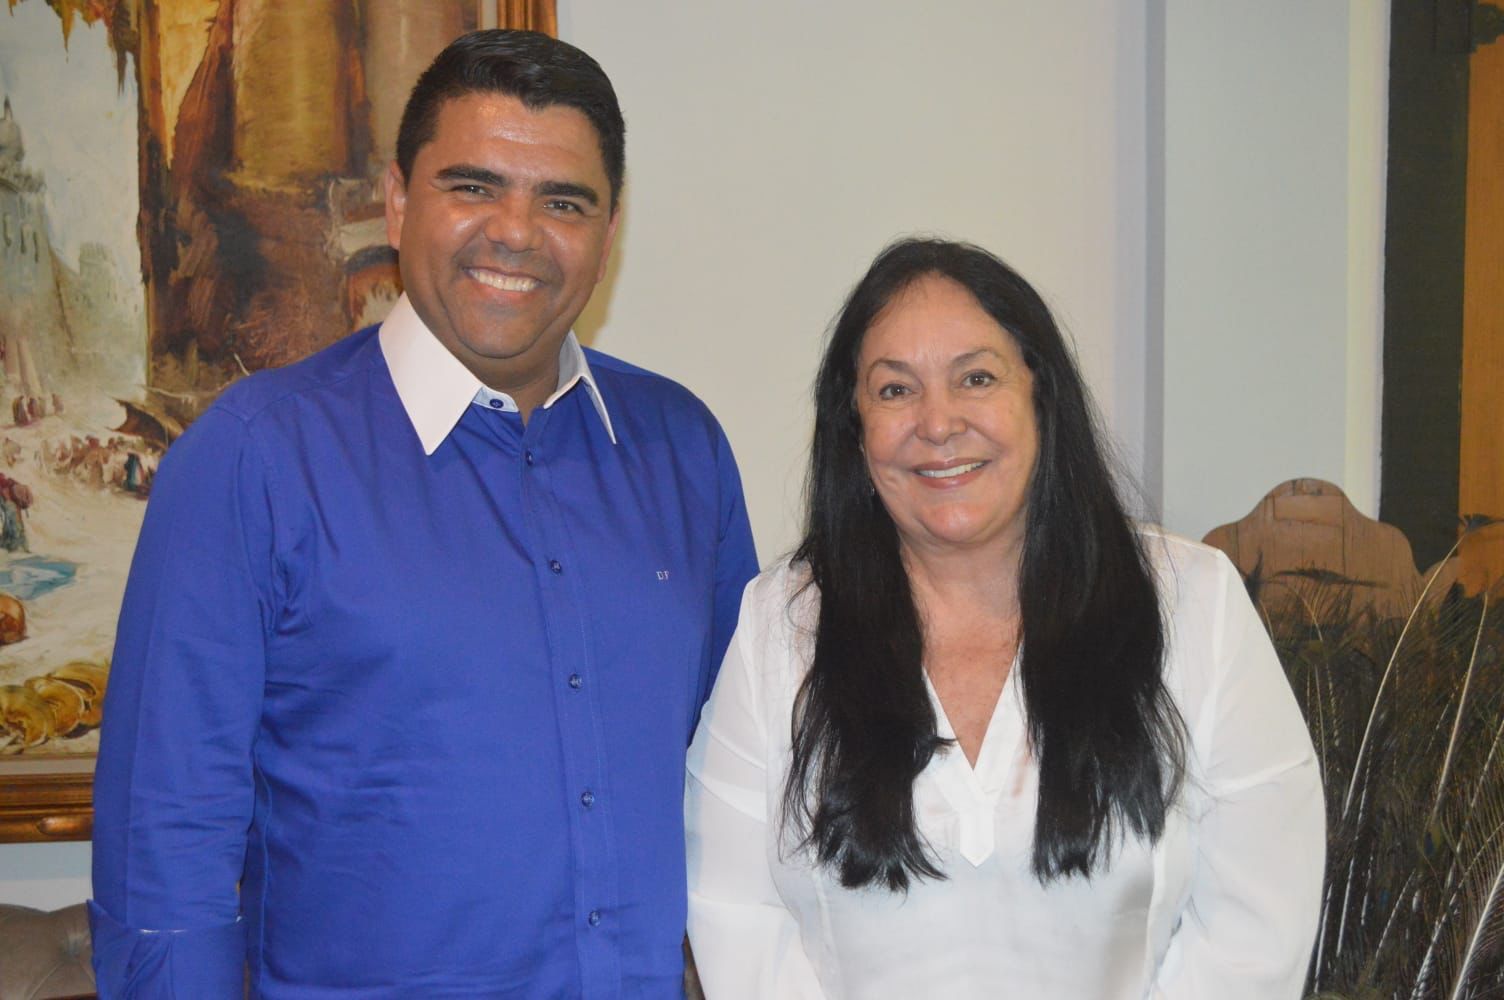 Rose de Freitas e Devanir Ferreira se empenham para arrecadar recursos para investimentos sociais